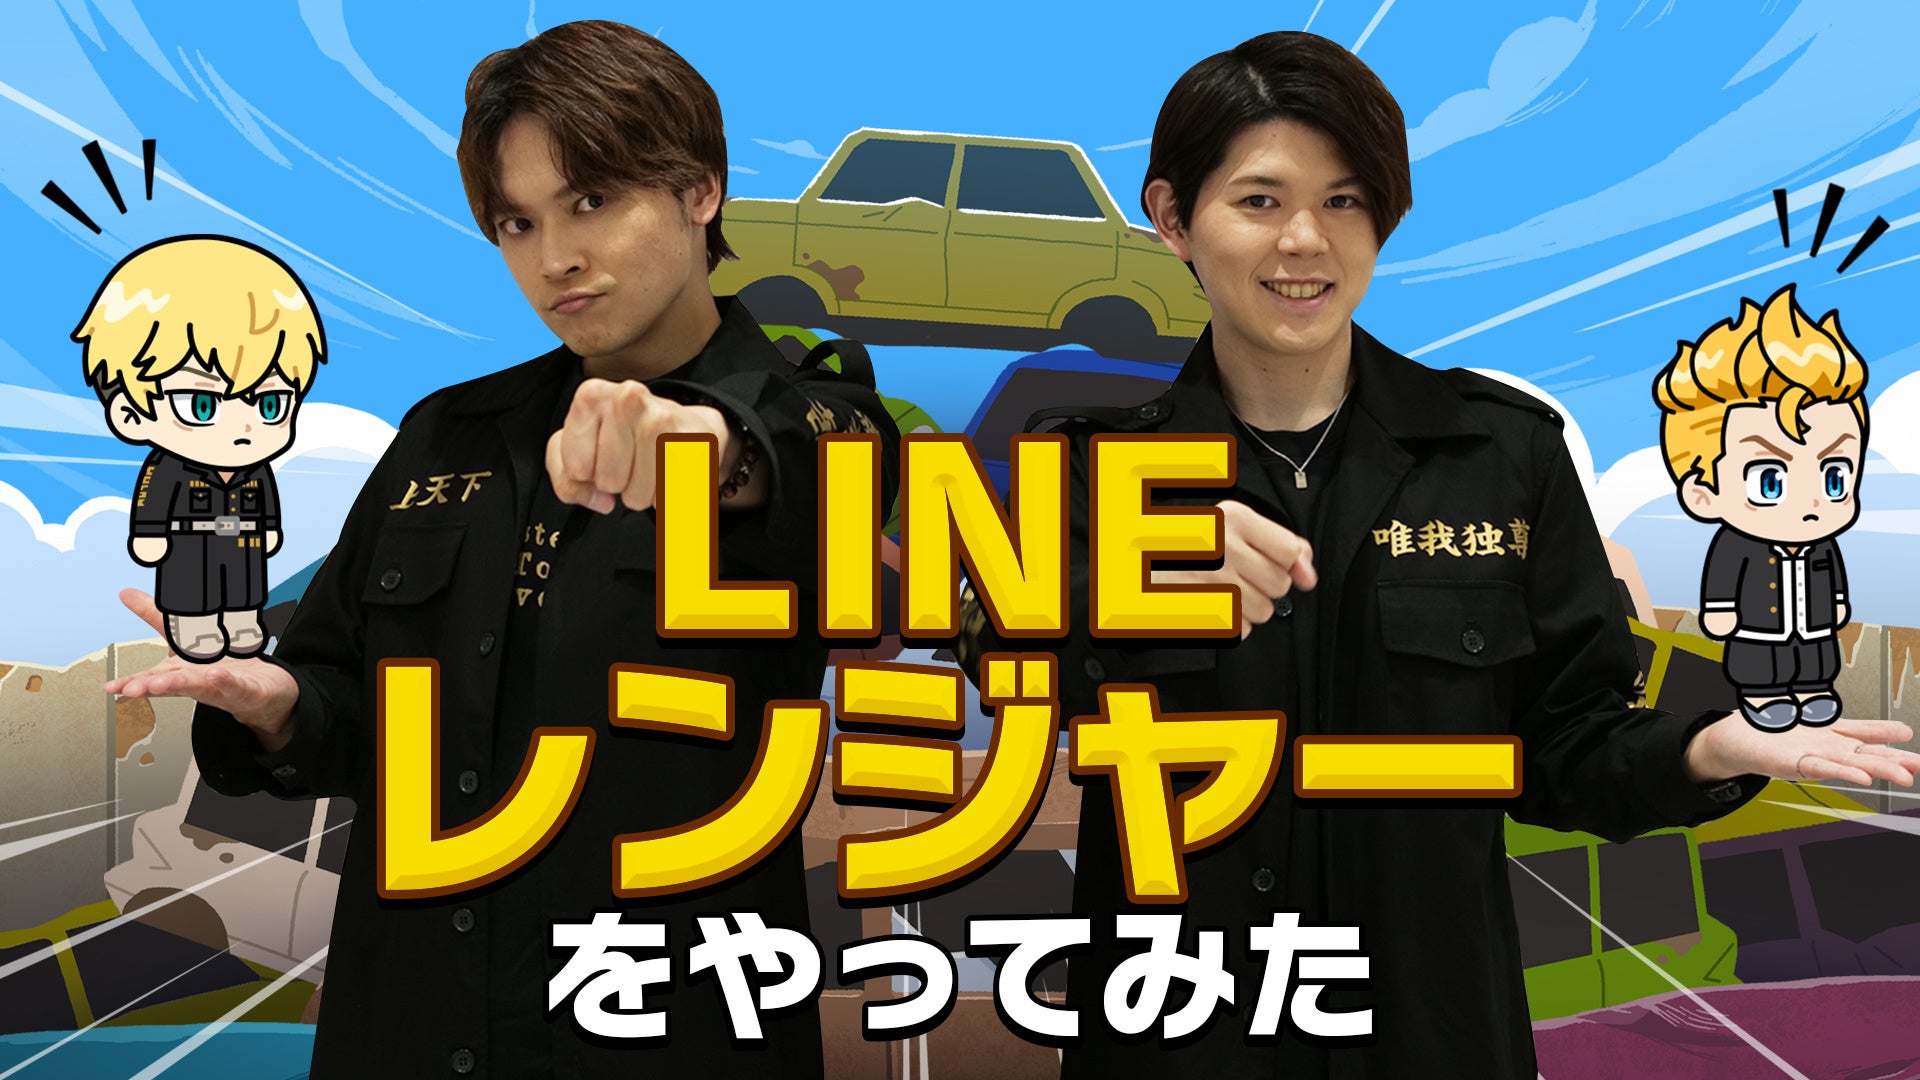 TVアニメ『東京リベンジャーズ』公式YouTubeチャンネルにて「LINE レンジャー」とのコラボ動画が本日配信！